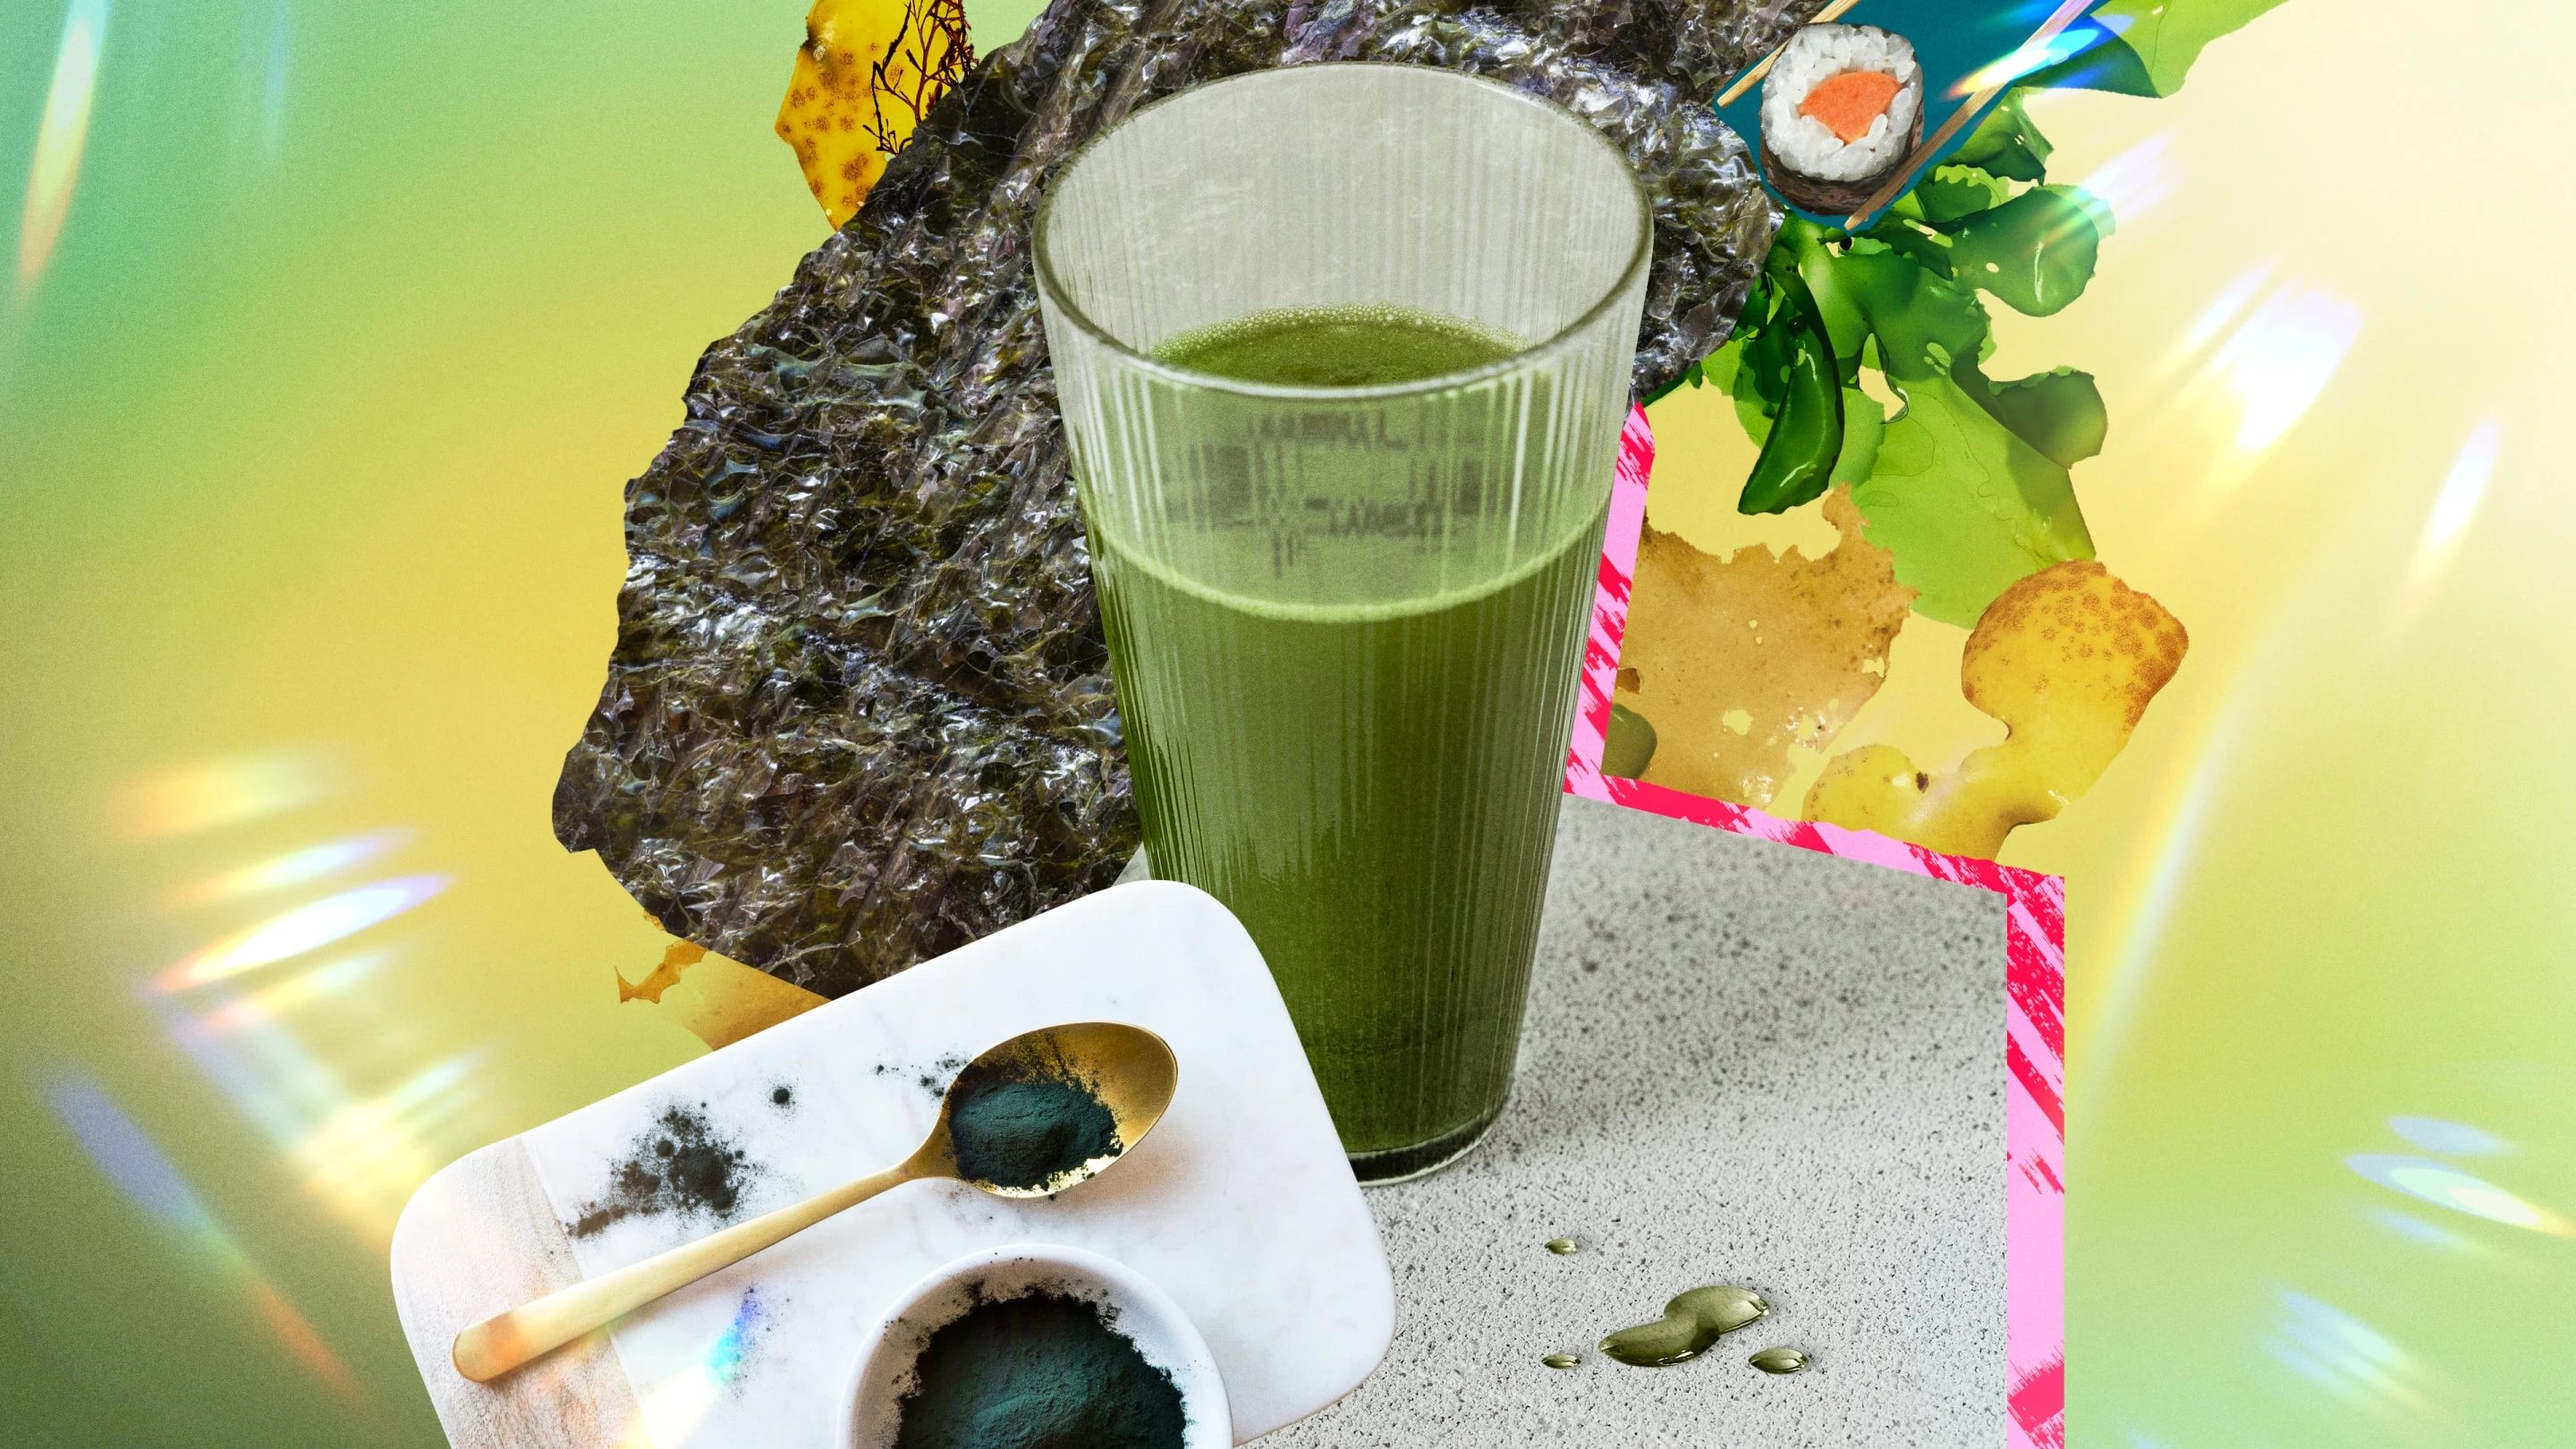 Al centro, l'immagine di un bicchiere con del succo verde circondata da elementi che hanno a che fare con le alghe, come sushi, alghe in polvere, bacchette e alghe cotte.